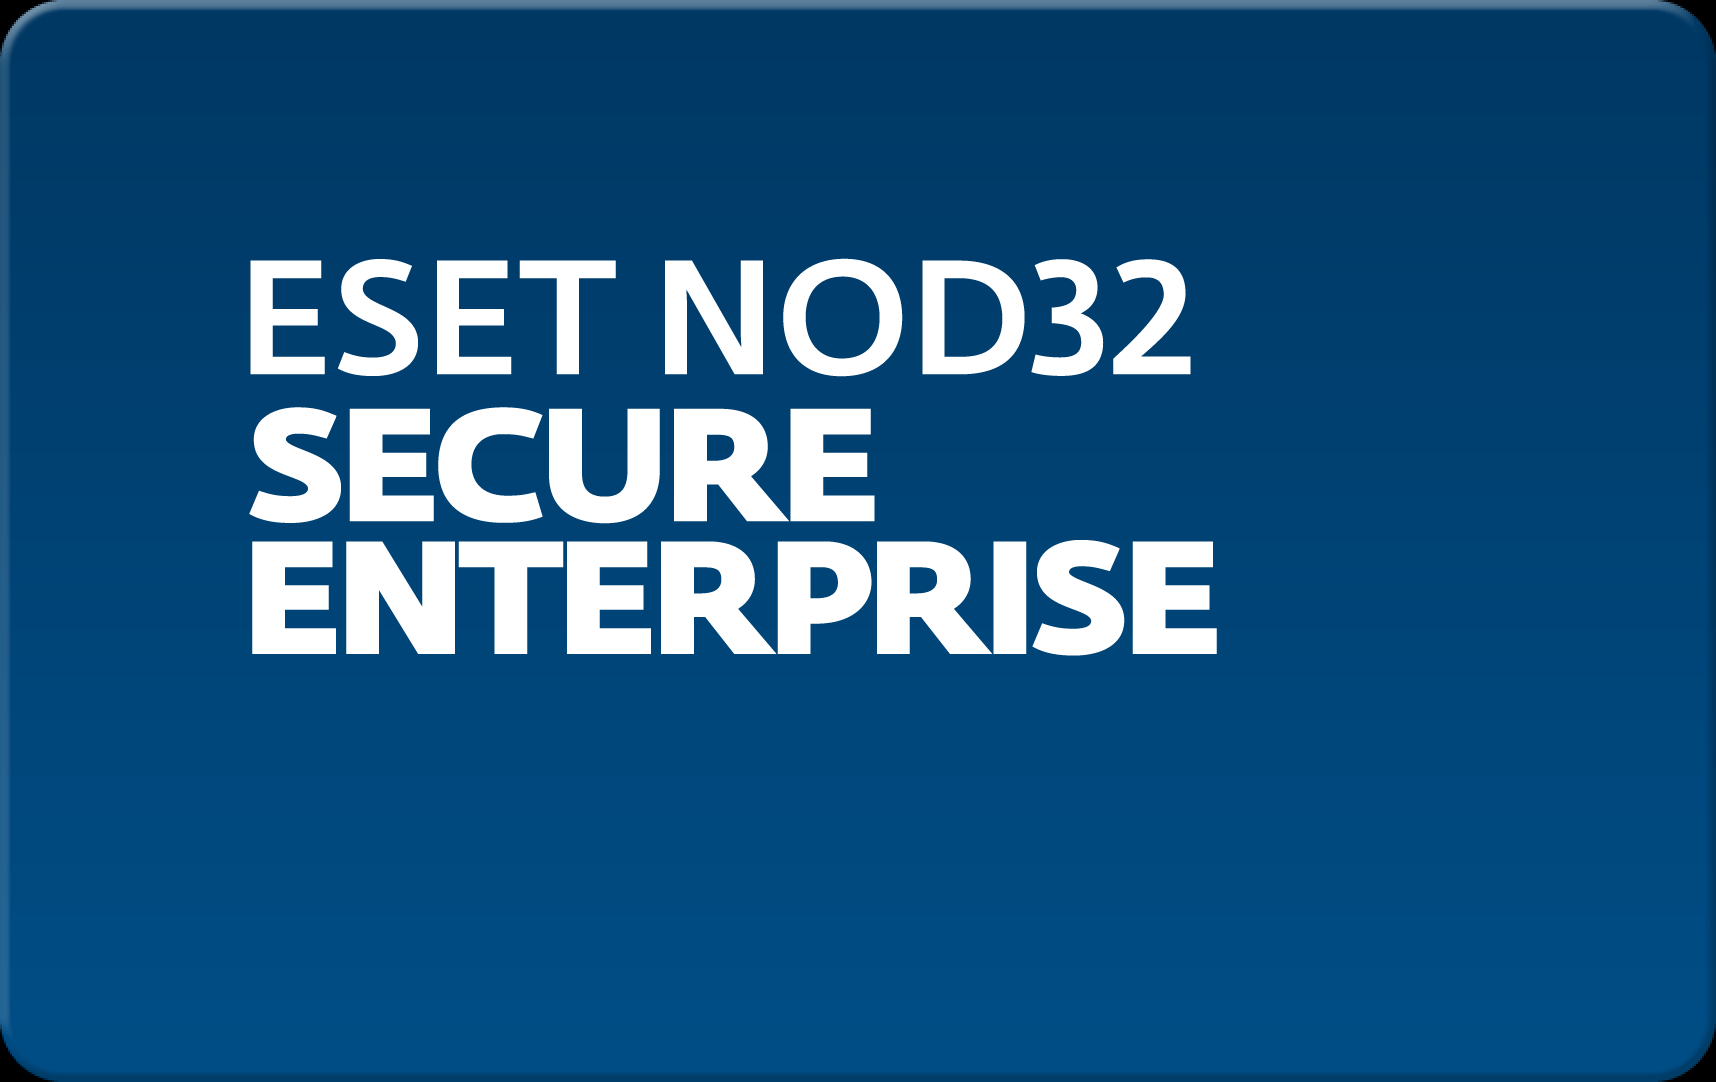        Eset NOD32 Secure Enterprise  175  NOD32-ESE-NS-1-175  #1